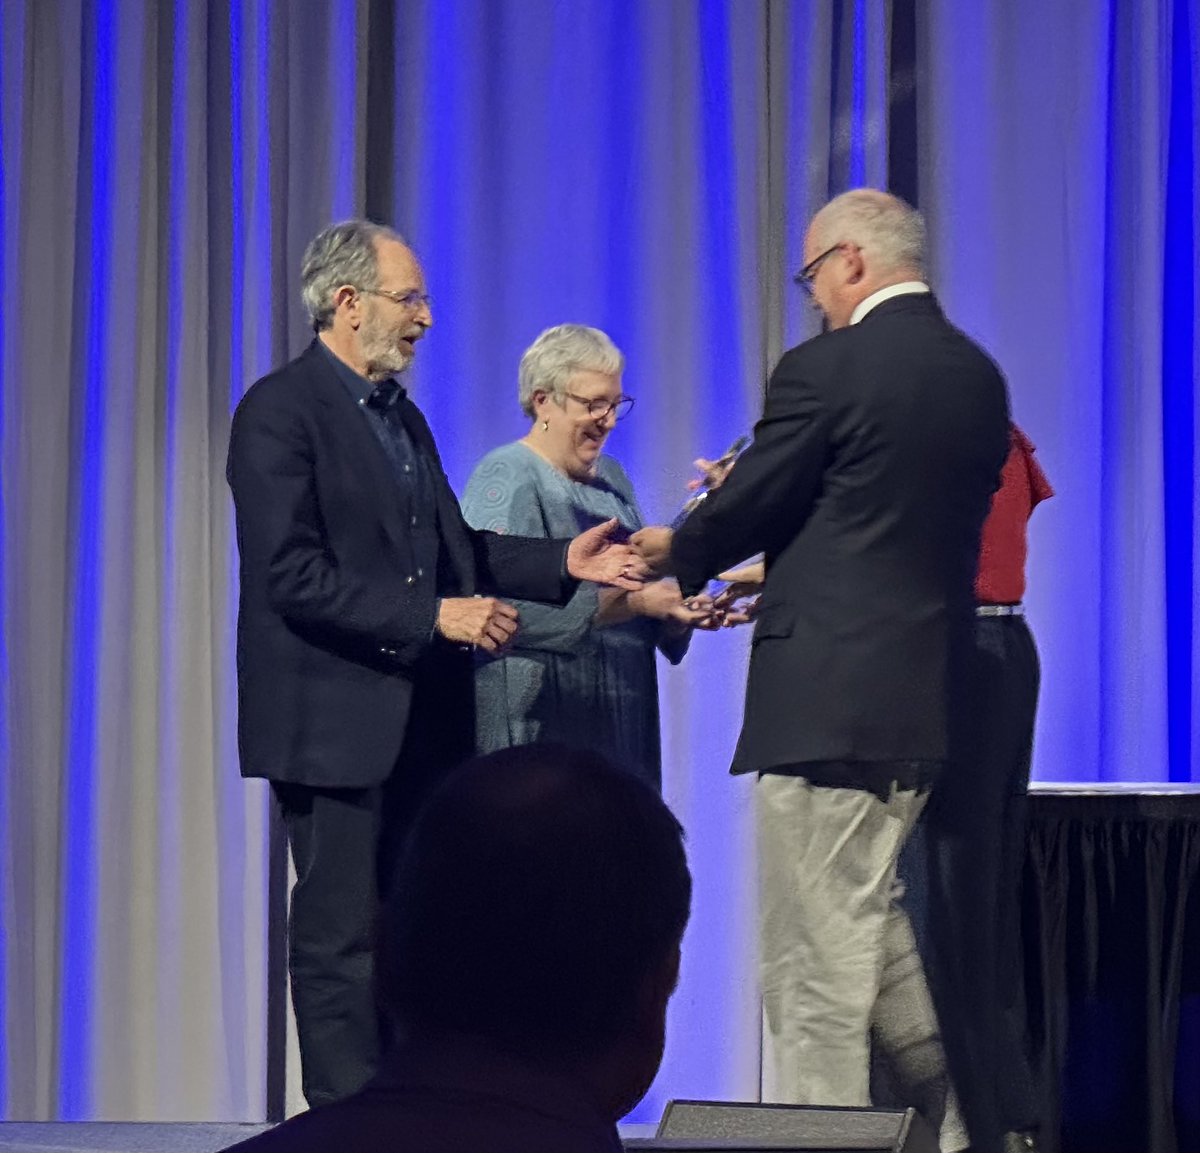 Congrats to Susan Davis and Larry Kahn for winning the ATLIS Pillar Award at #atlis23